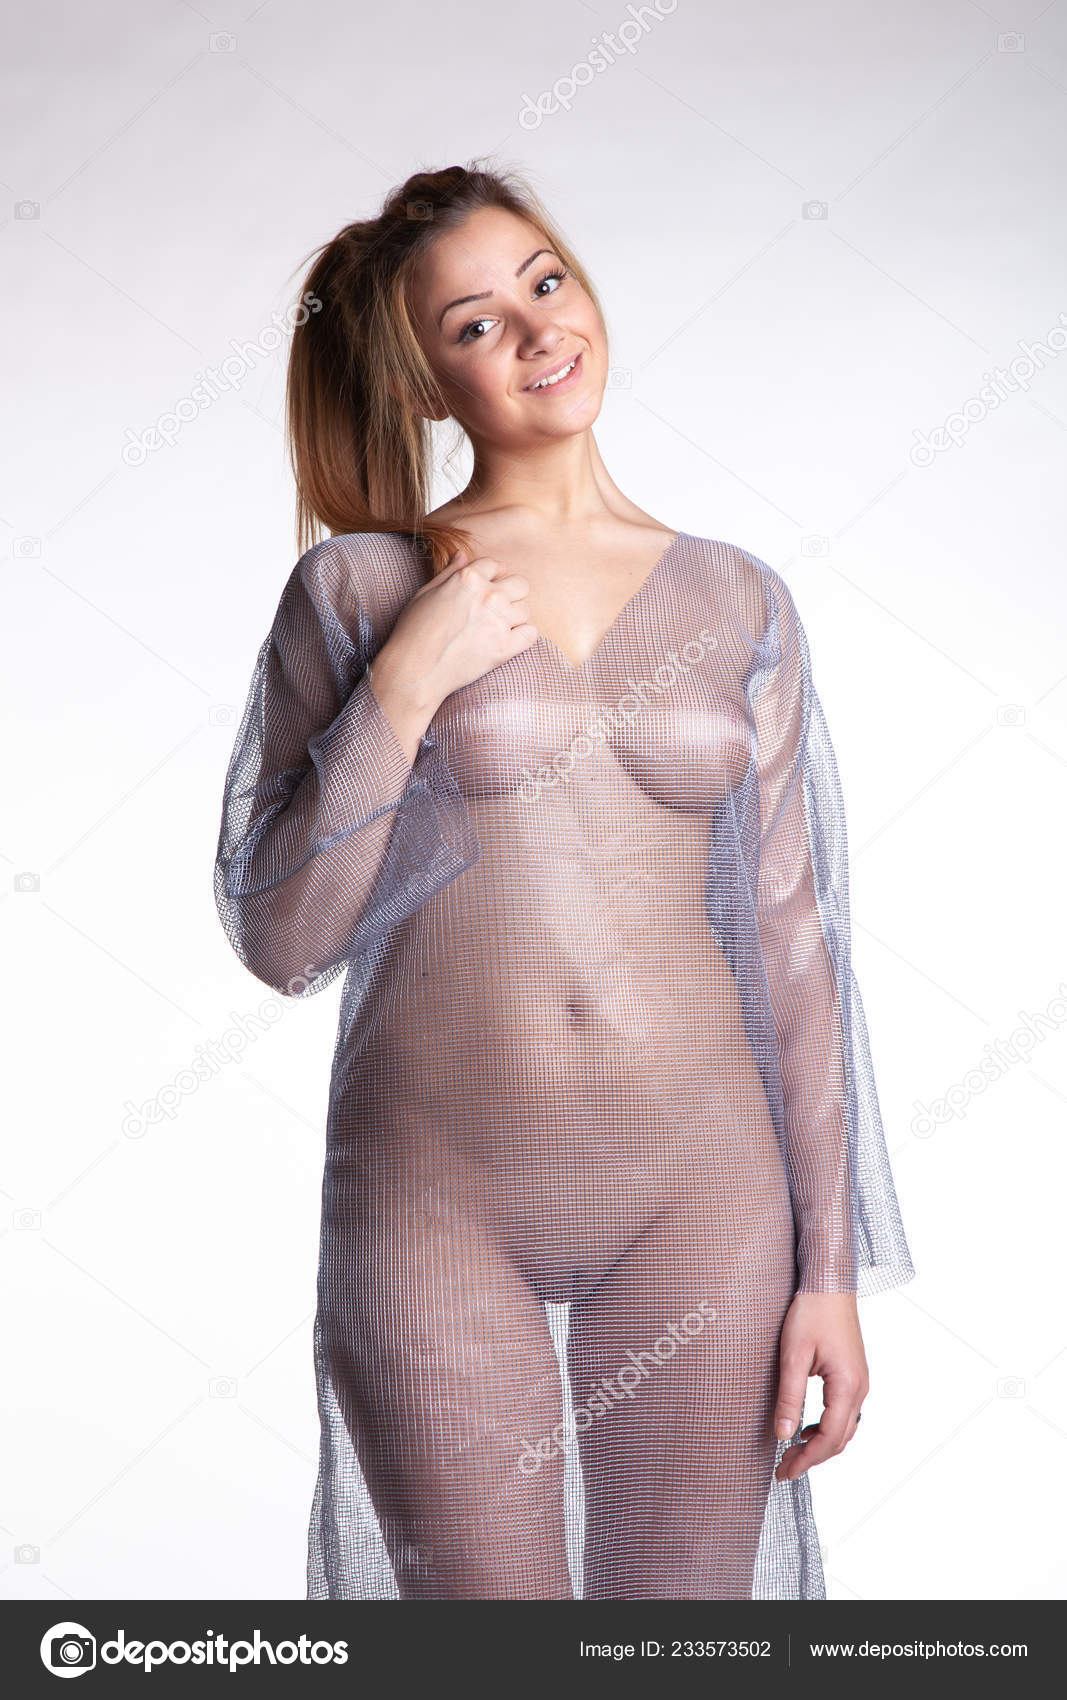 https://st4n.depositphotos.com/10086424/23357/i/1600/depositphotos_233573502-stock-photo-young-beautiful-girl-posing-nude.jpg